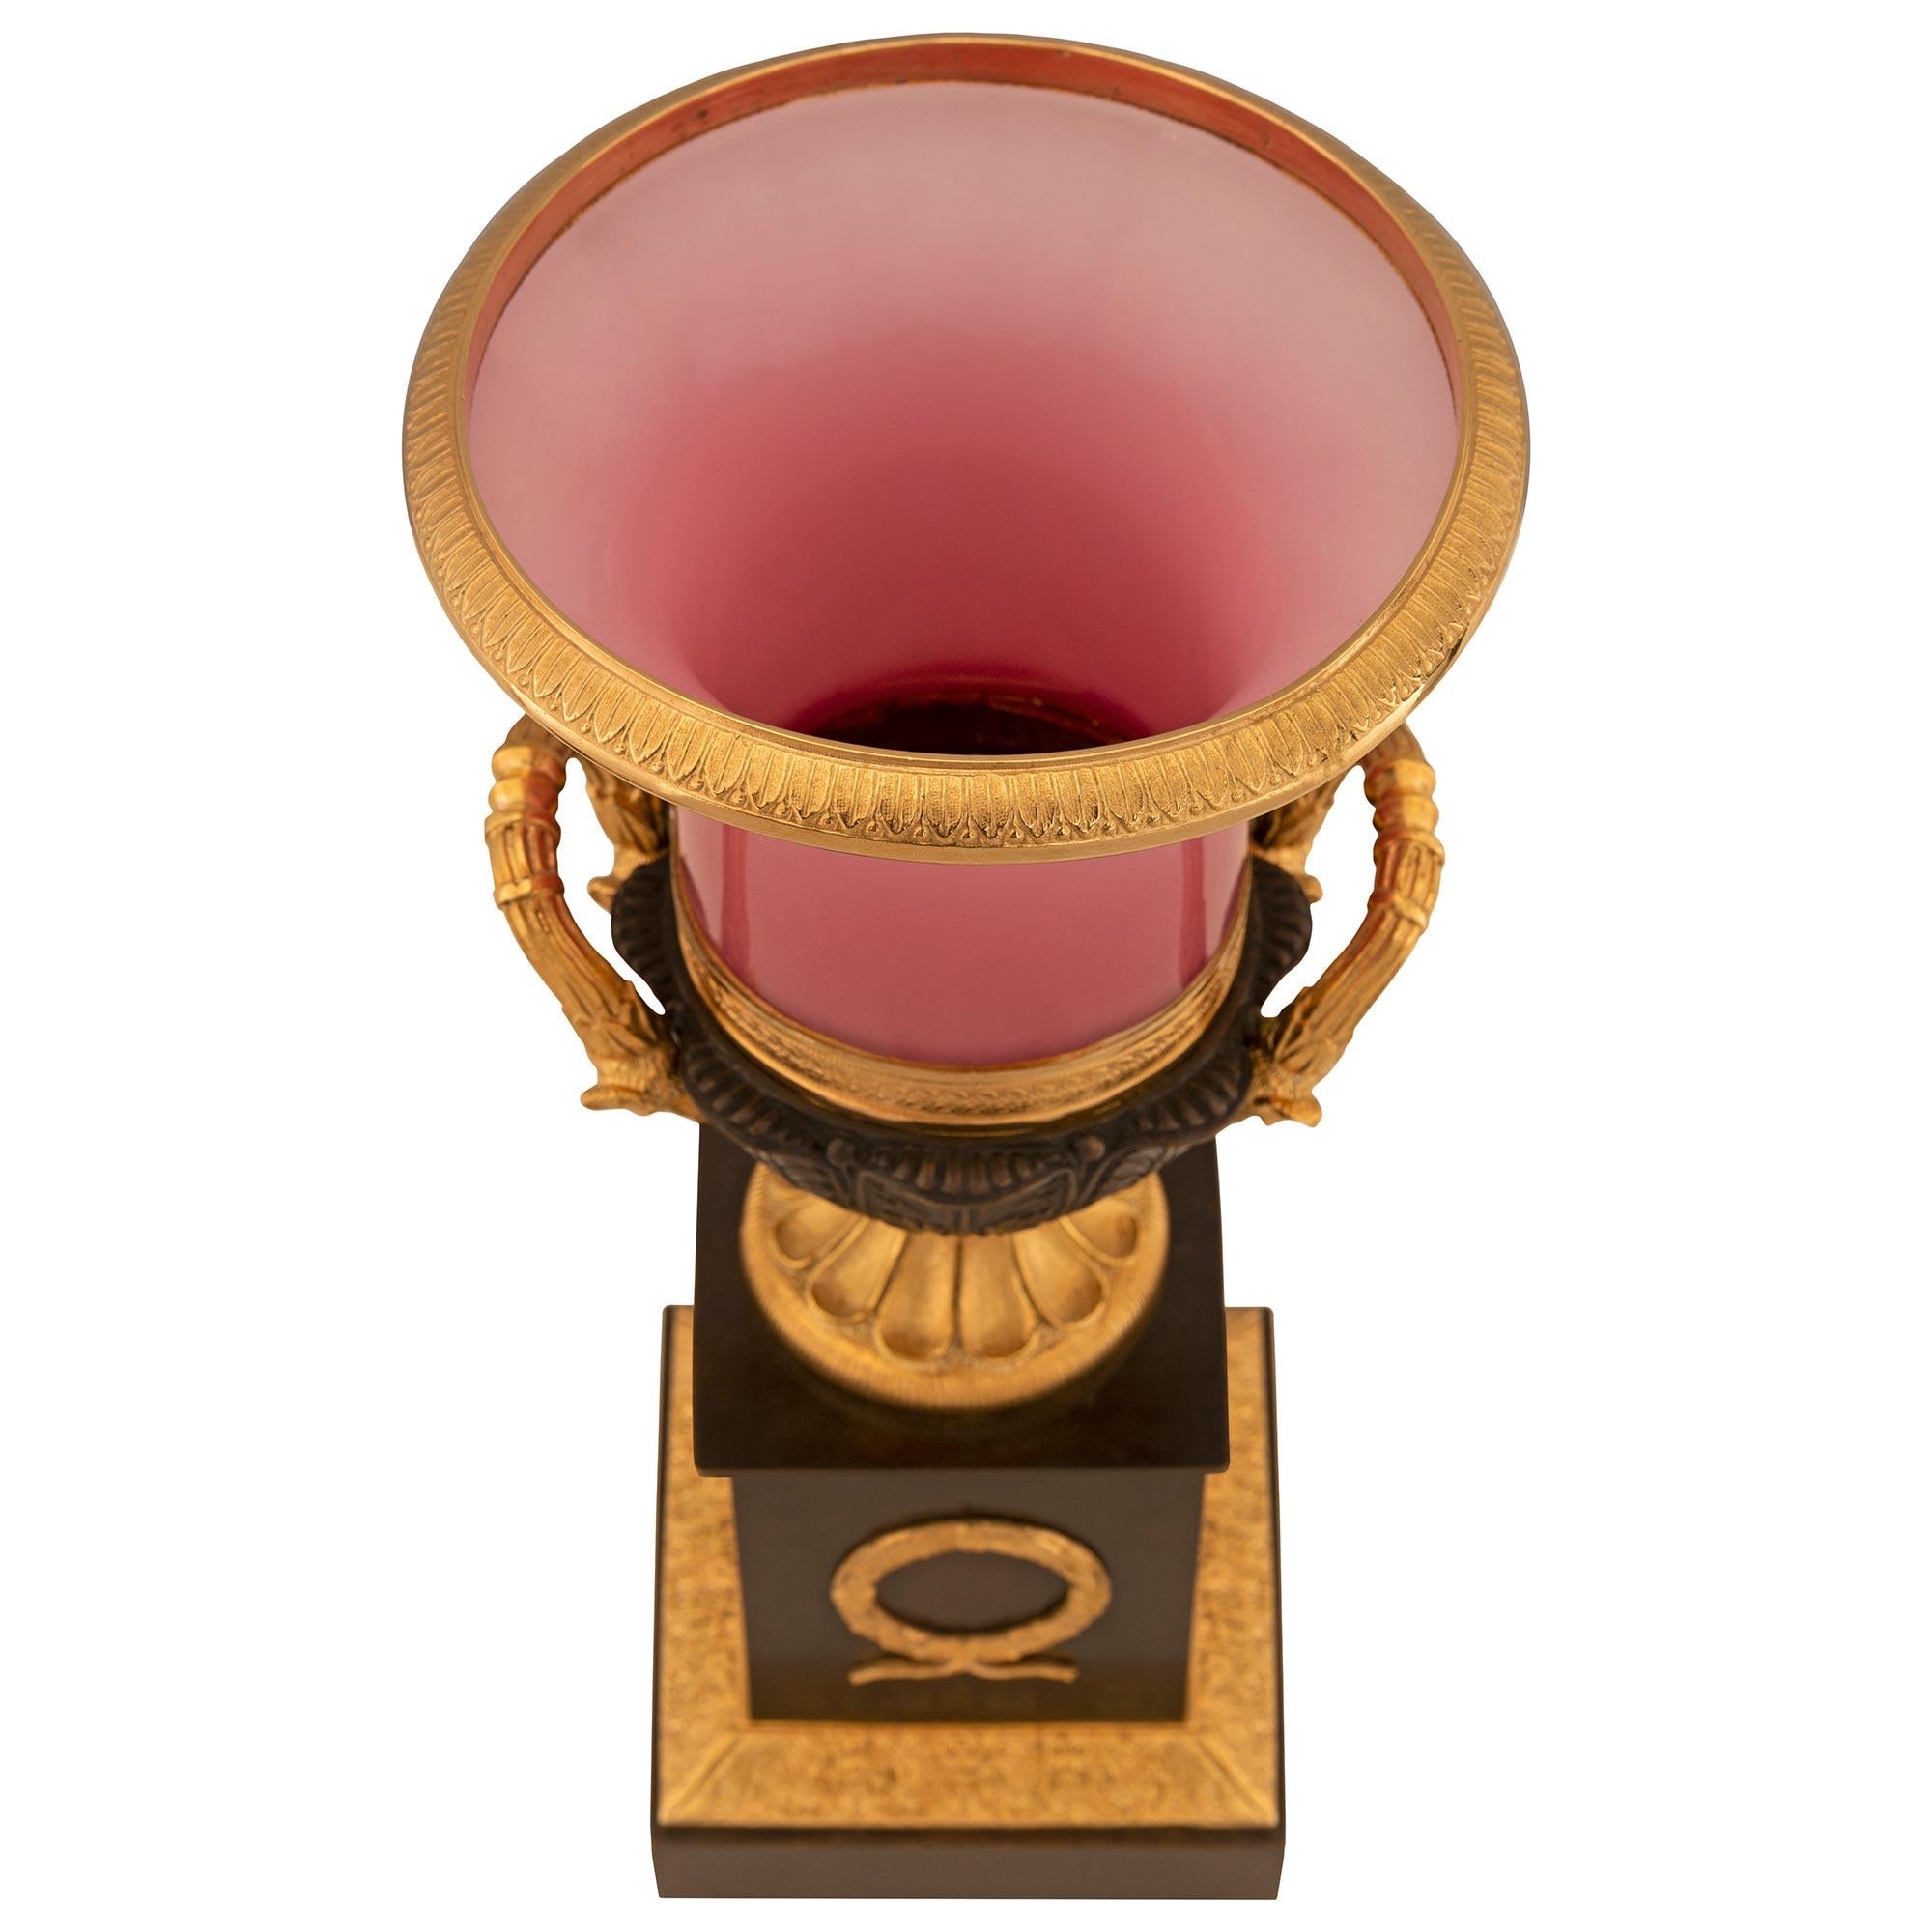 Une paire d'urnes néoclassiques du XIXe siècle en bronze patiné, bronze doré et verre. Chaque urne est surmontée d'une base carrée ornée d'une fine bande de bronze doré tachetée et d'une élégante couronne de laurier à baies au centre du support.